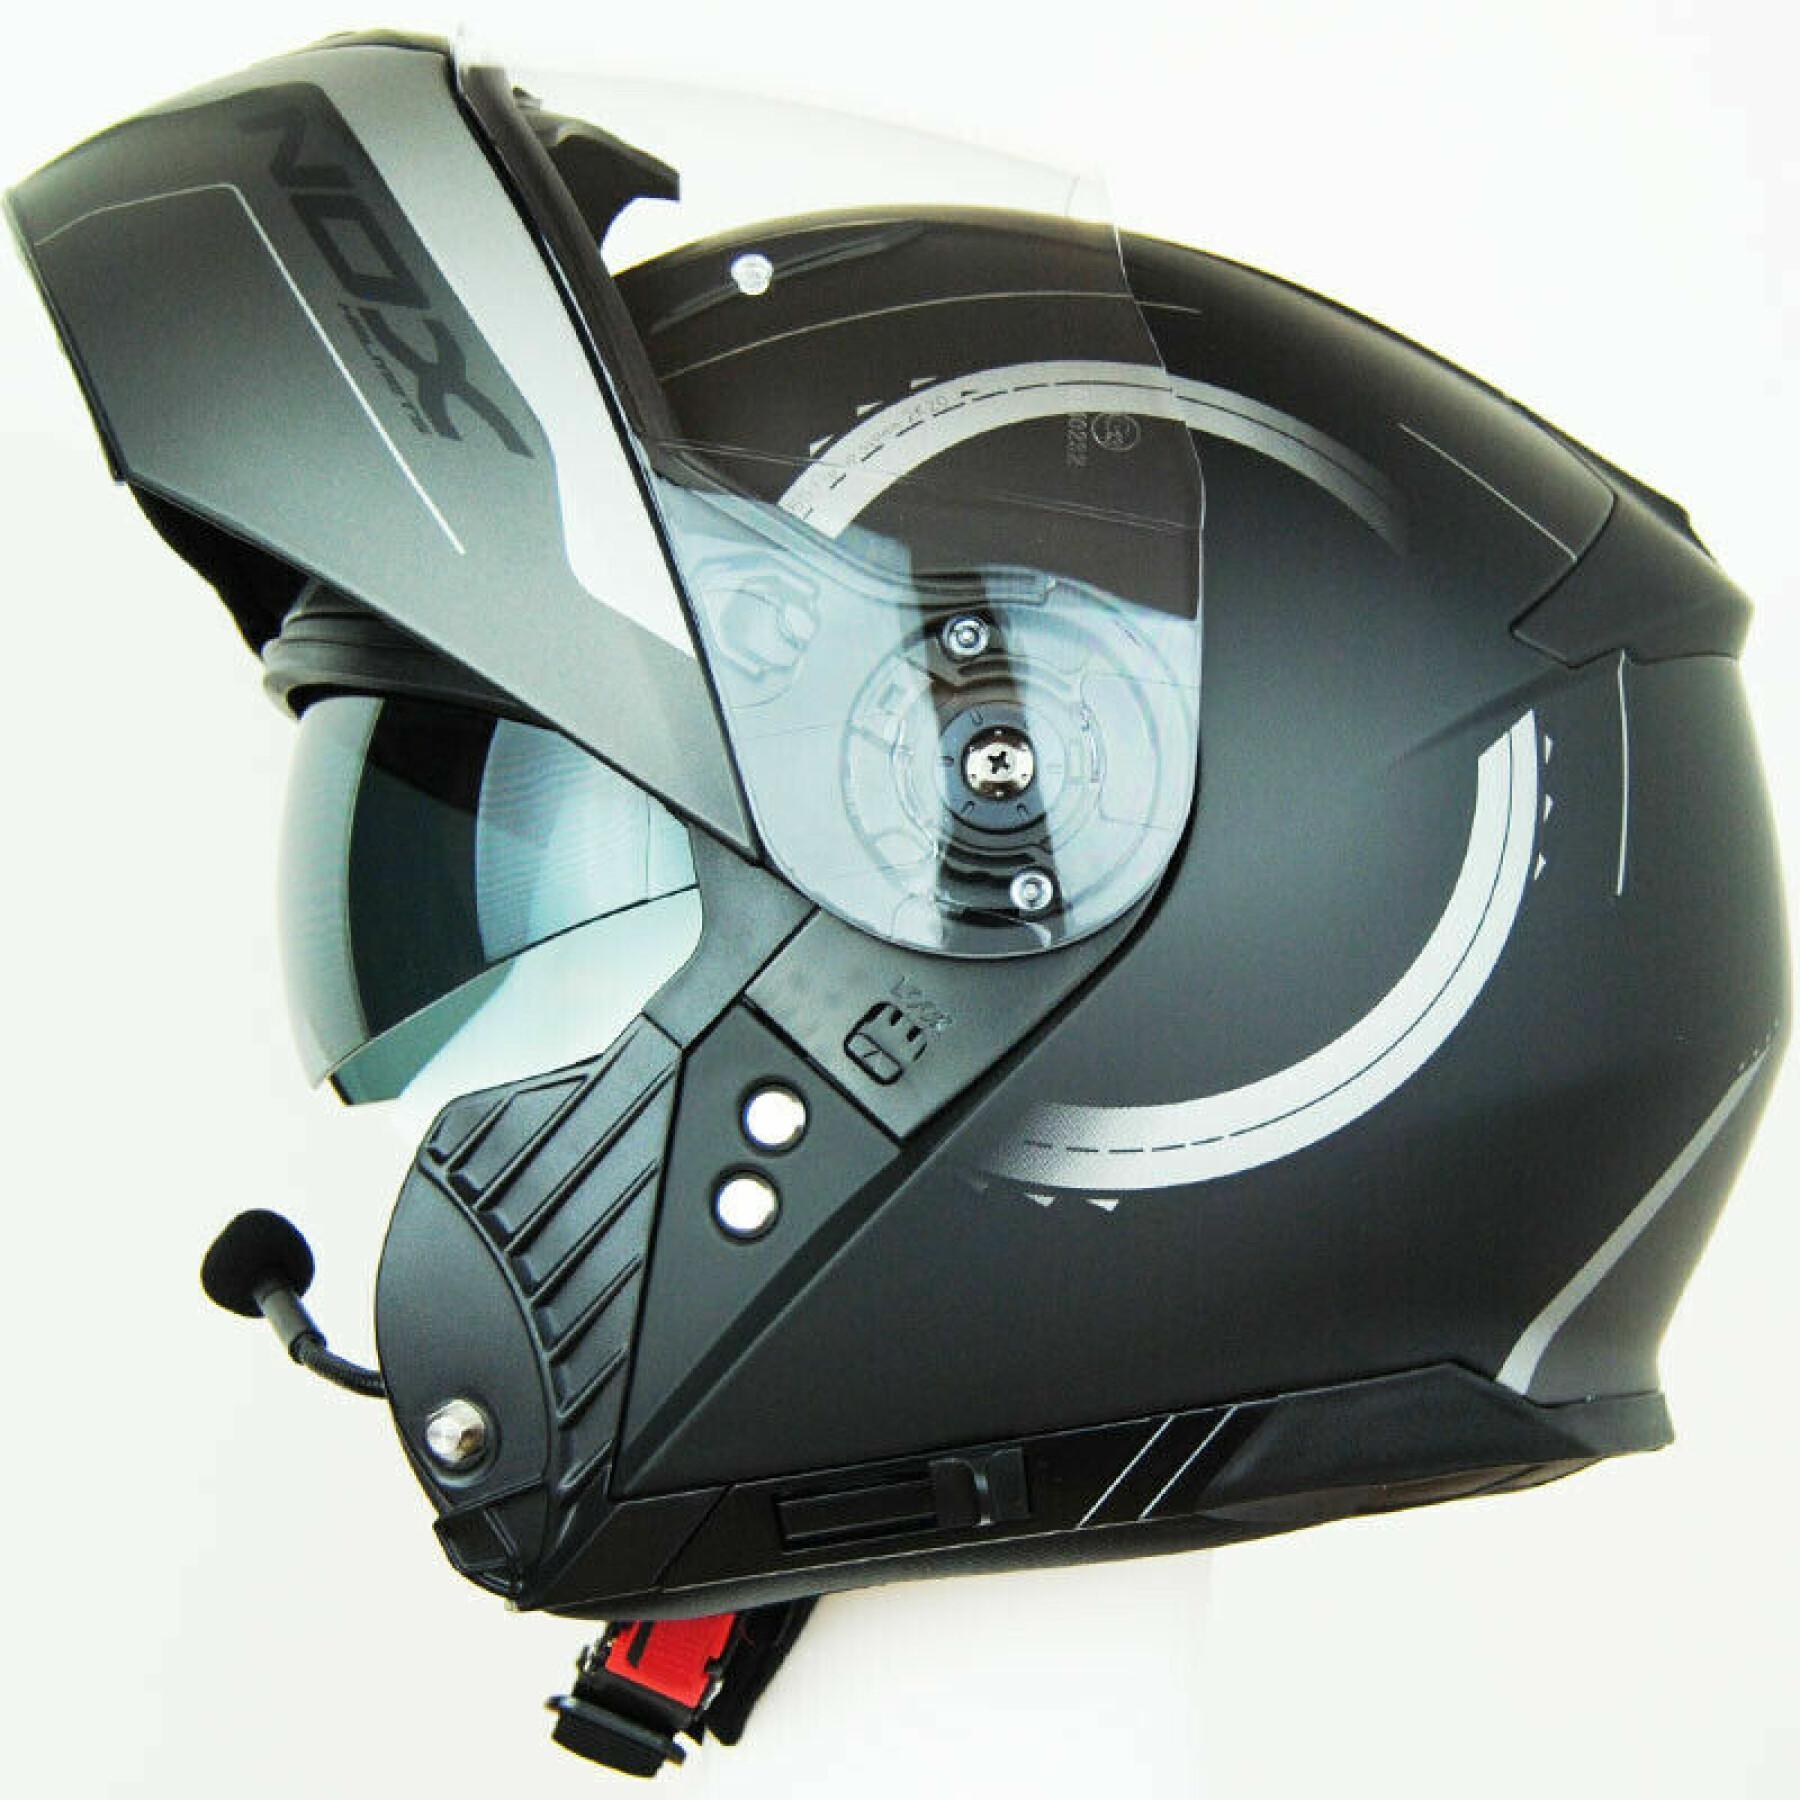 Modular motorcycle helmet Nox N965 Peak